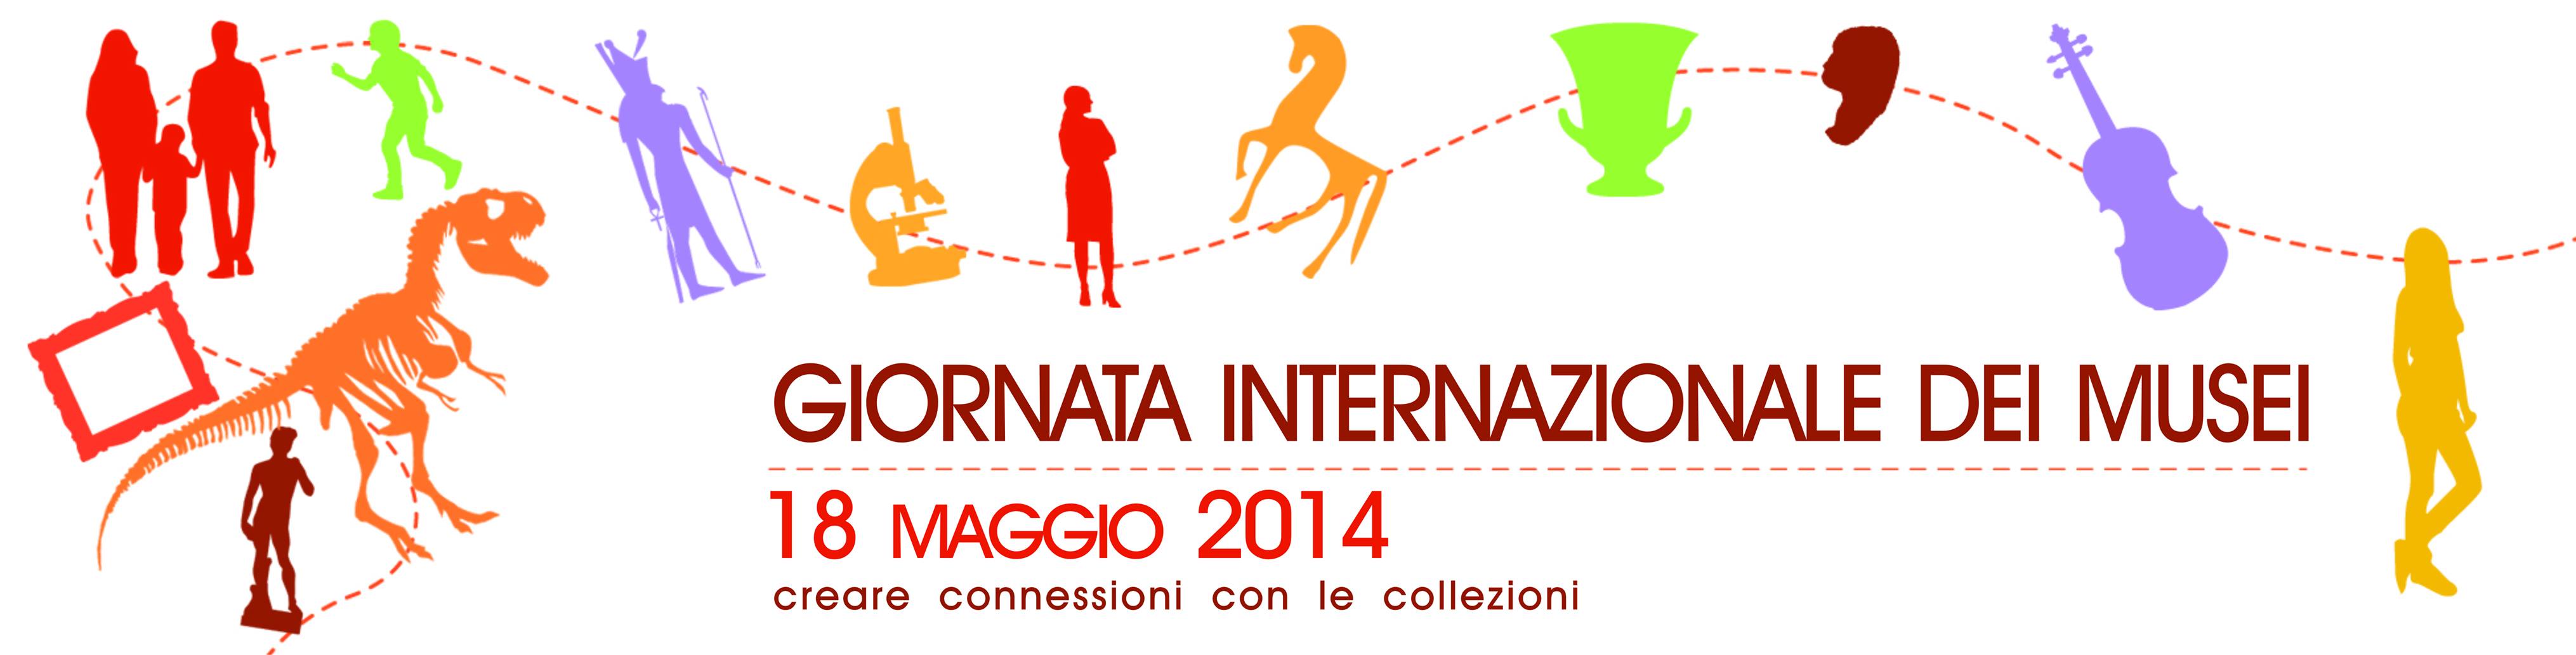 Giornata internazionale dei Musei 2014: domenica 18 maggio, il programma